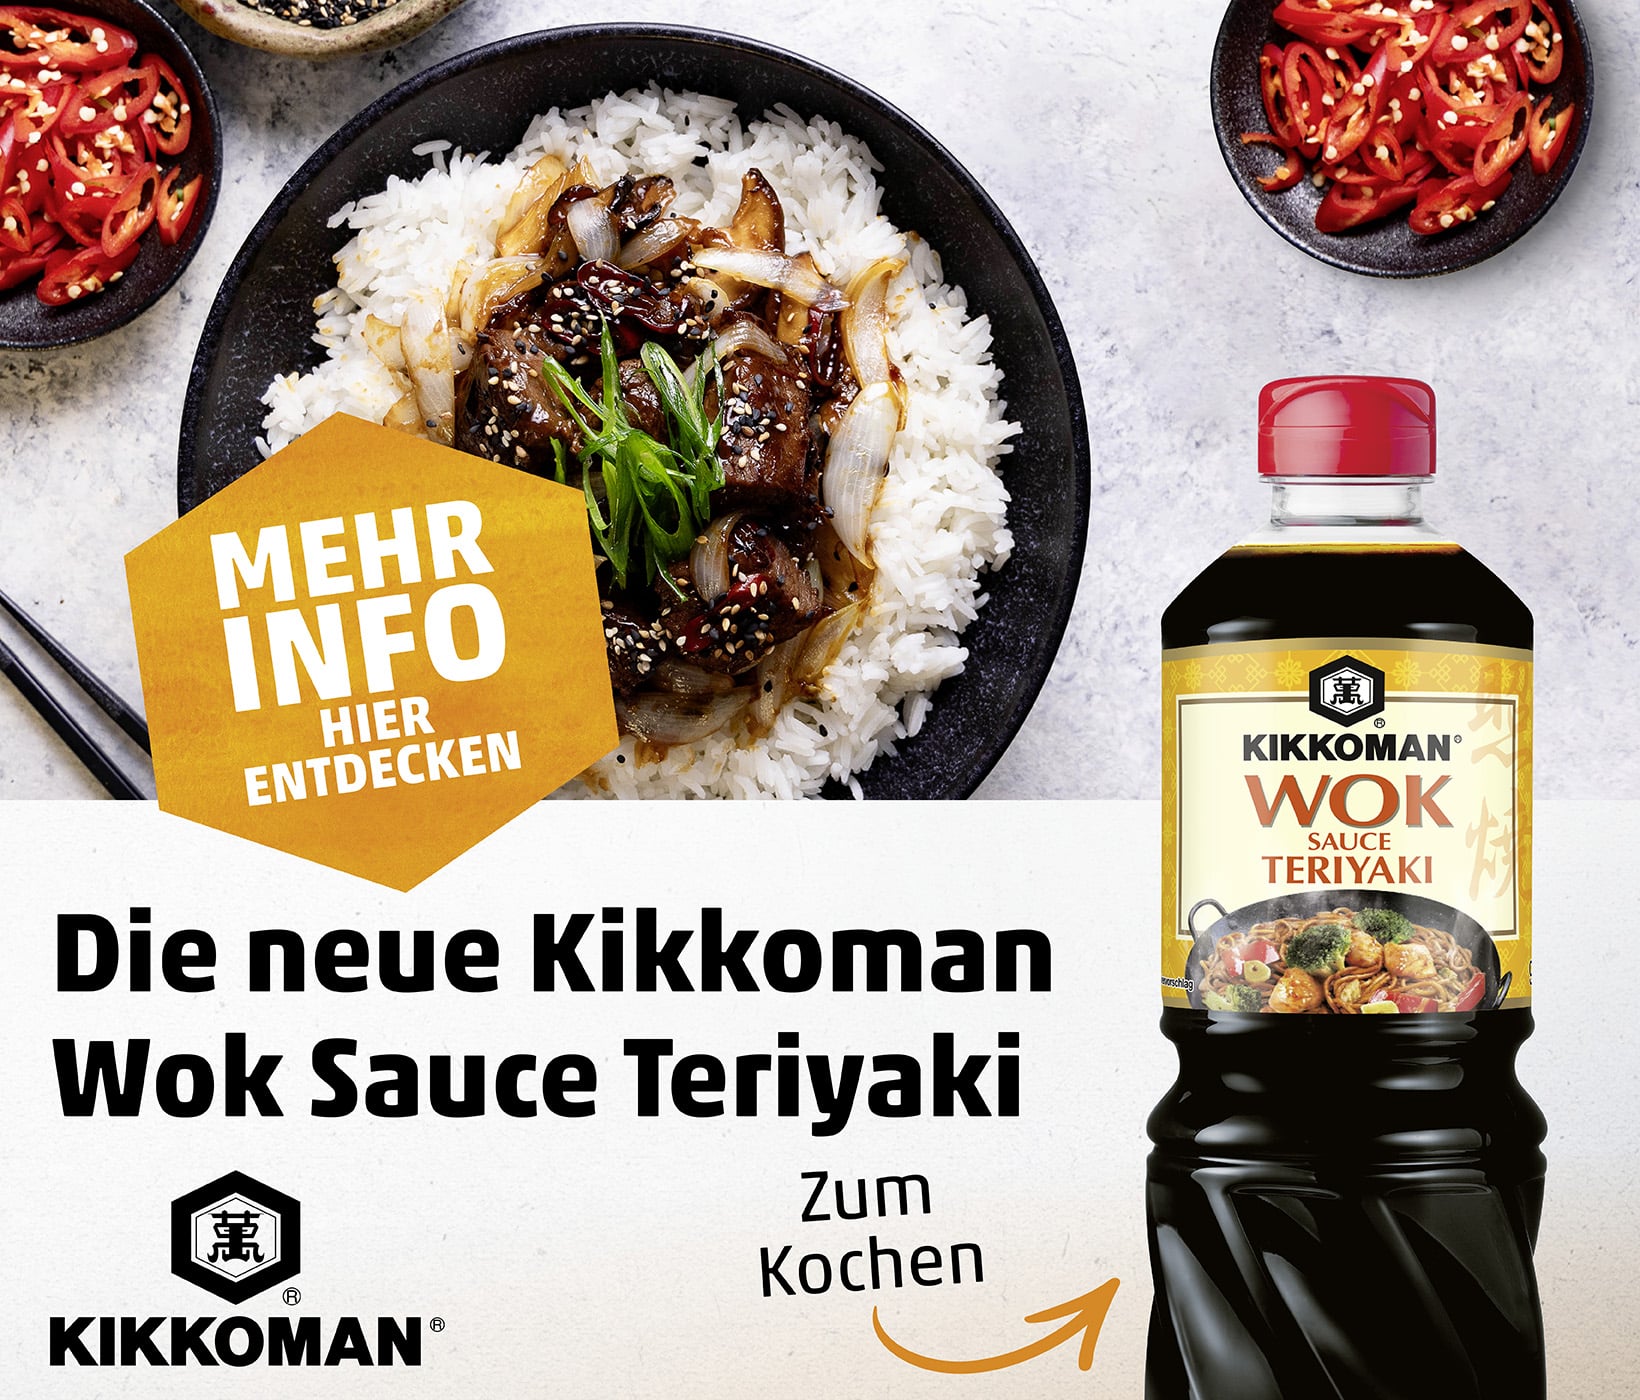 Develey Foodservice Kikkoman Wok Sauce Teriyaki Webbanner 1640x1400 LO3d